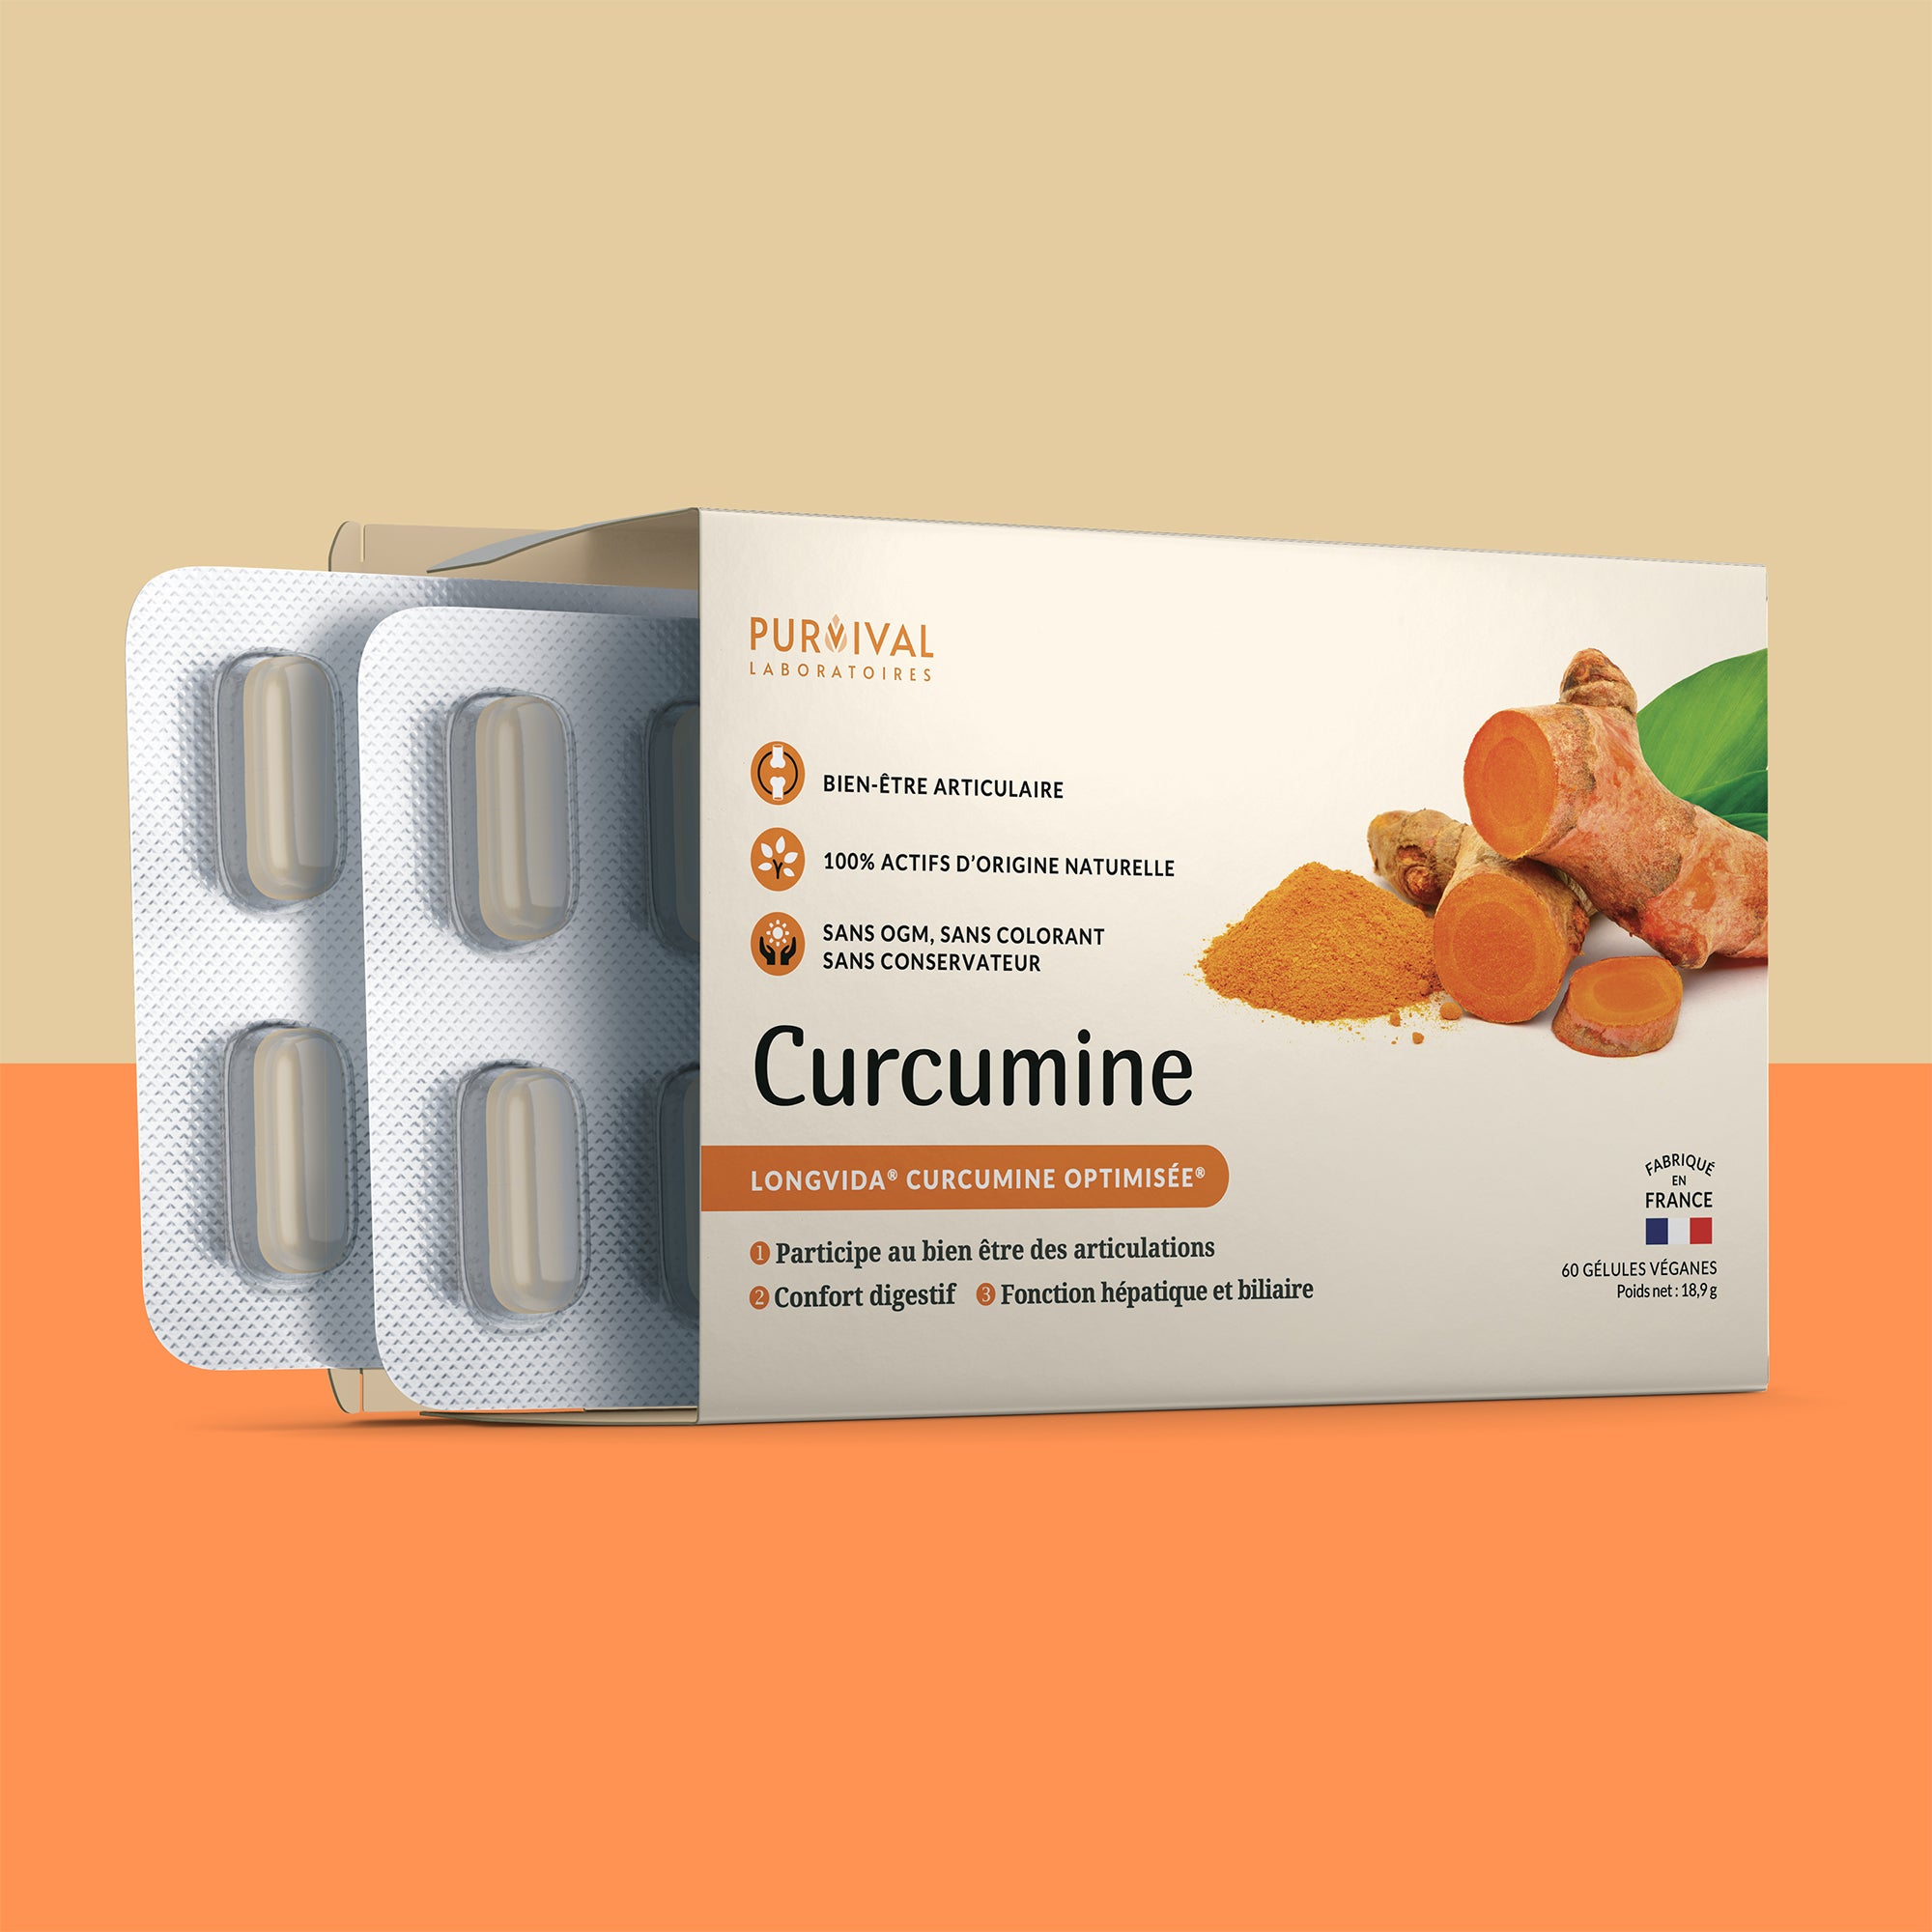 Curcuma Assimilable ®, Cure